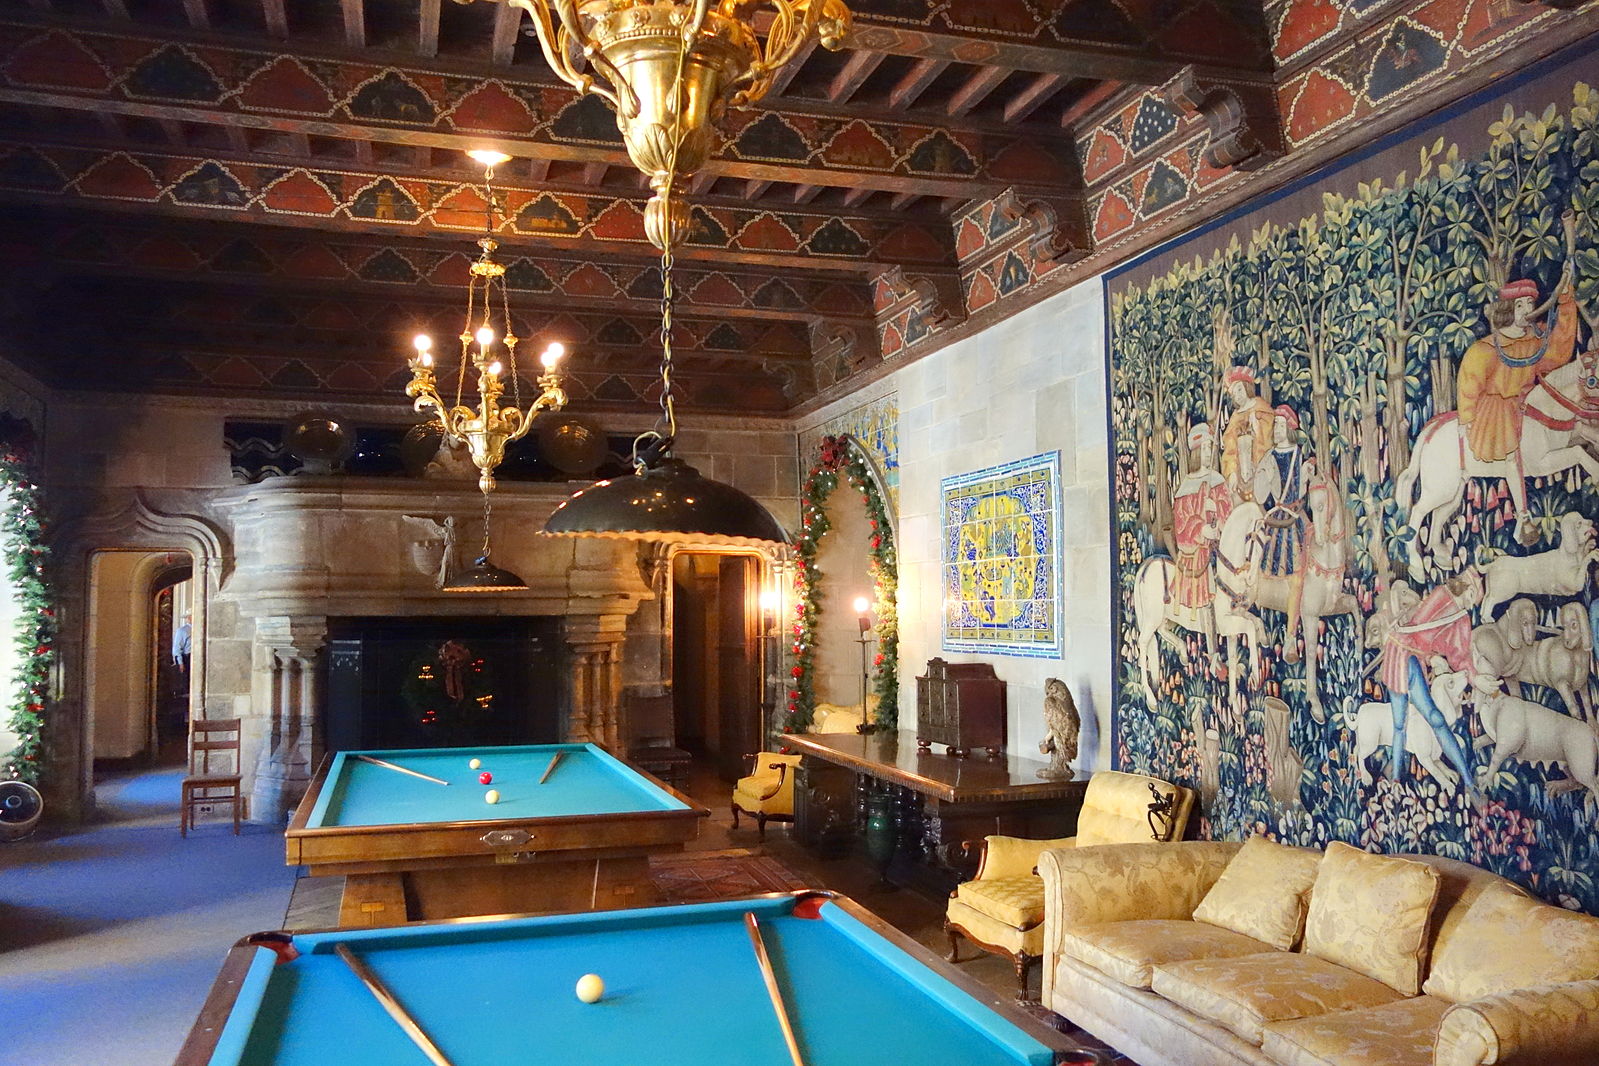 Una habitación adornada con dos mesas de billar y gran tapiz